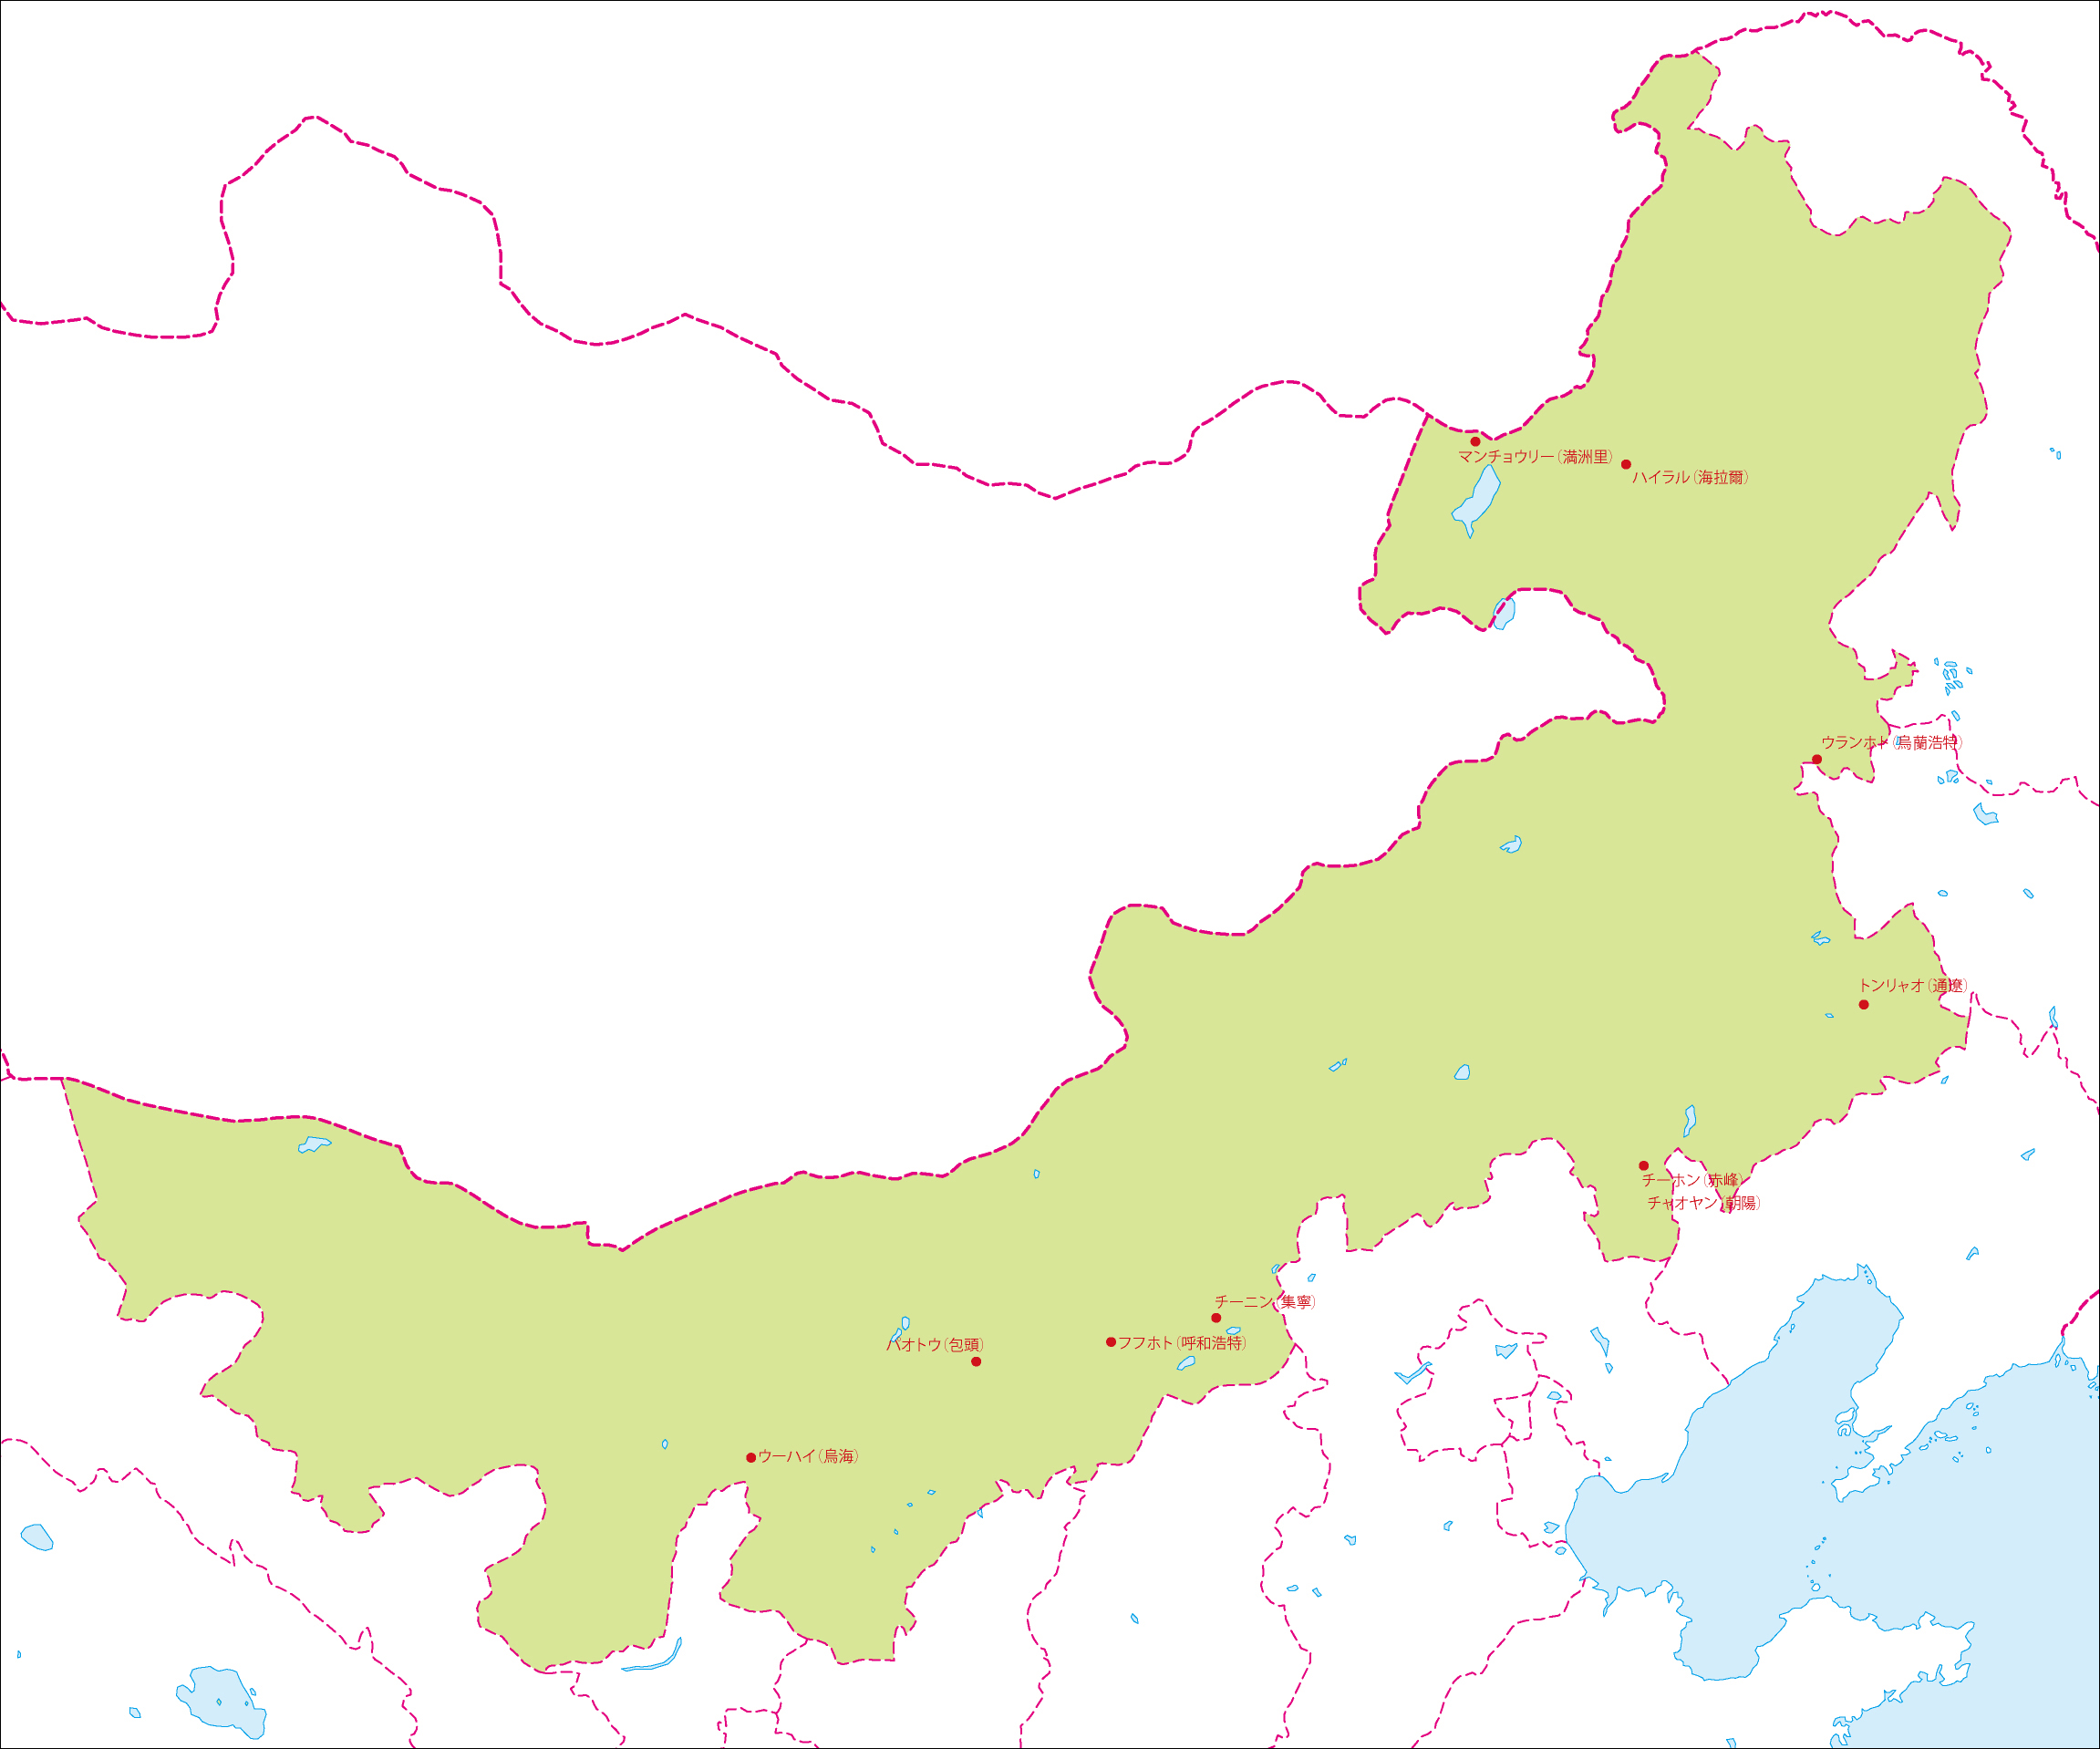 内モンゴル自治区地図(主な都市あり)のフリーデータの画像